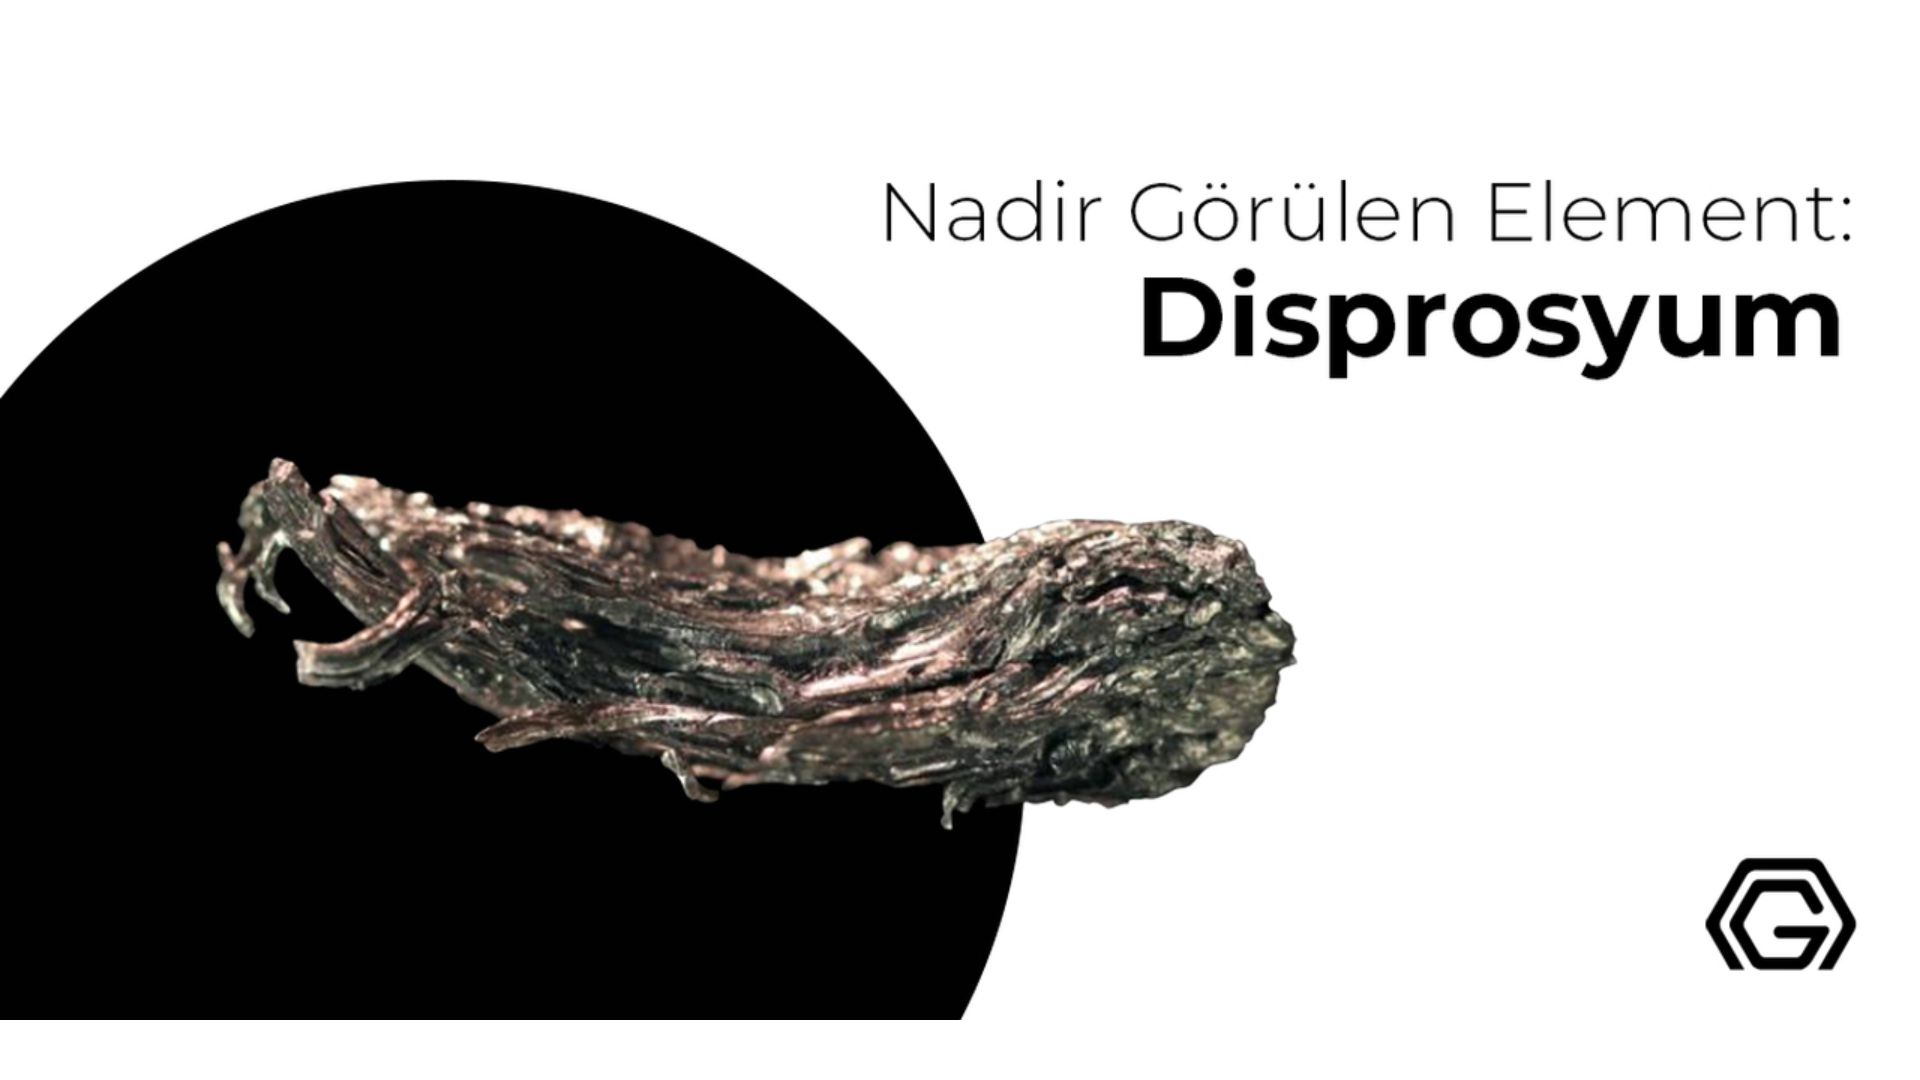 Nadir Element: Disprosyum